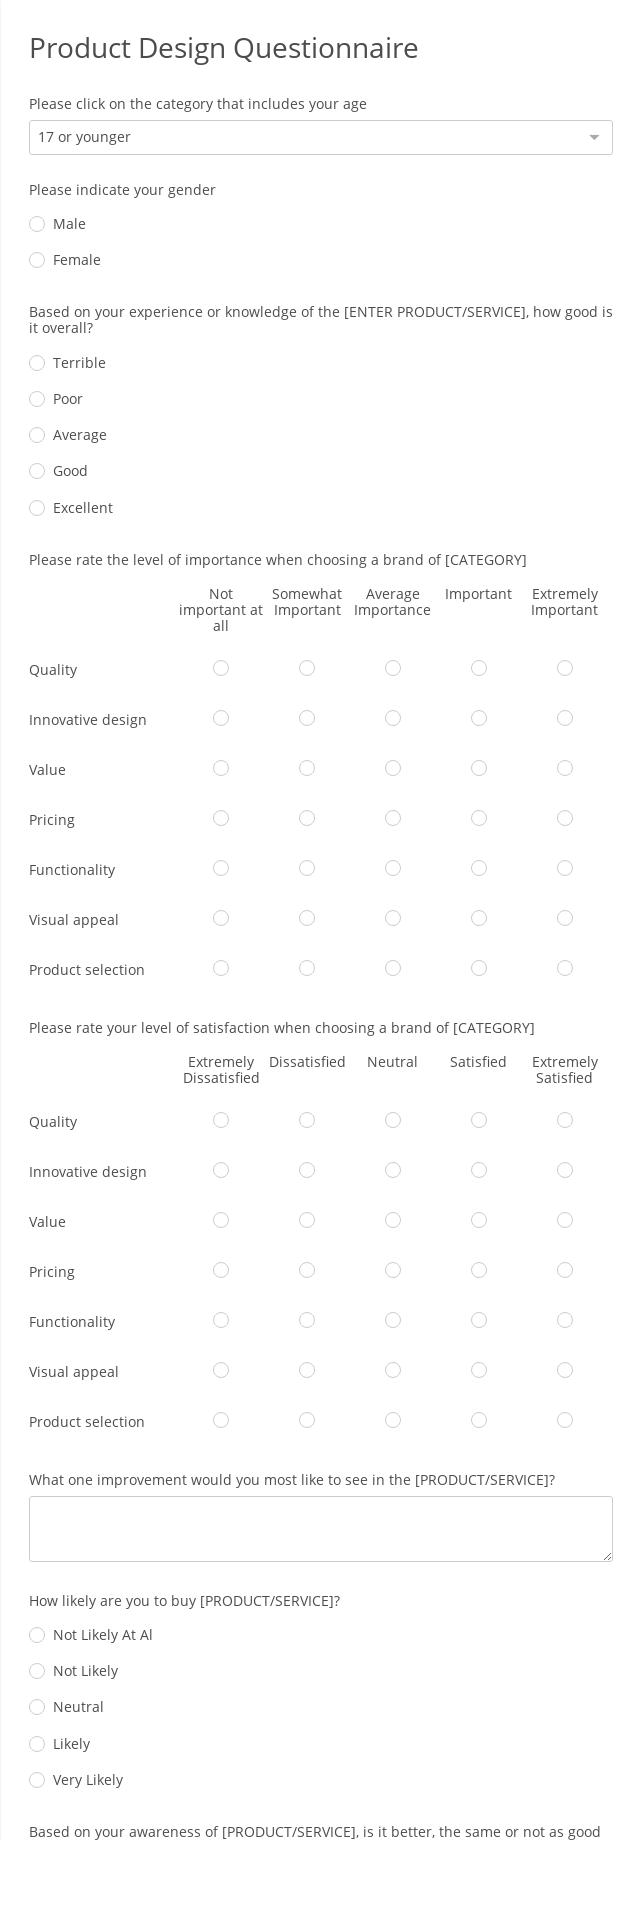 Product Design Questionnaire